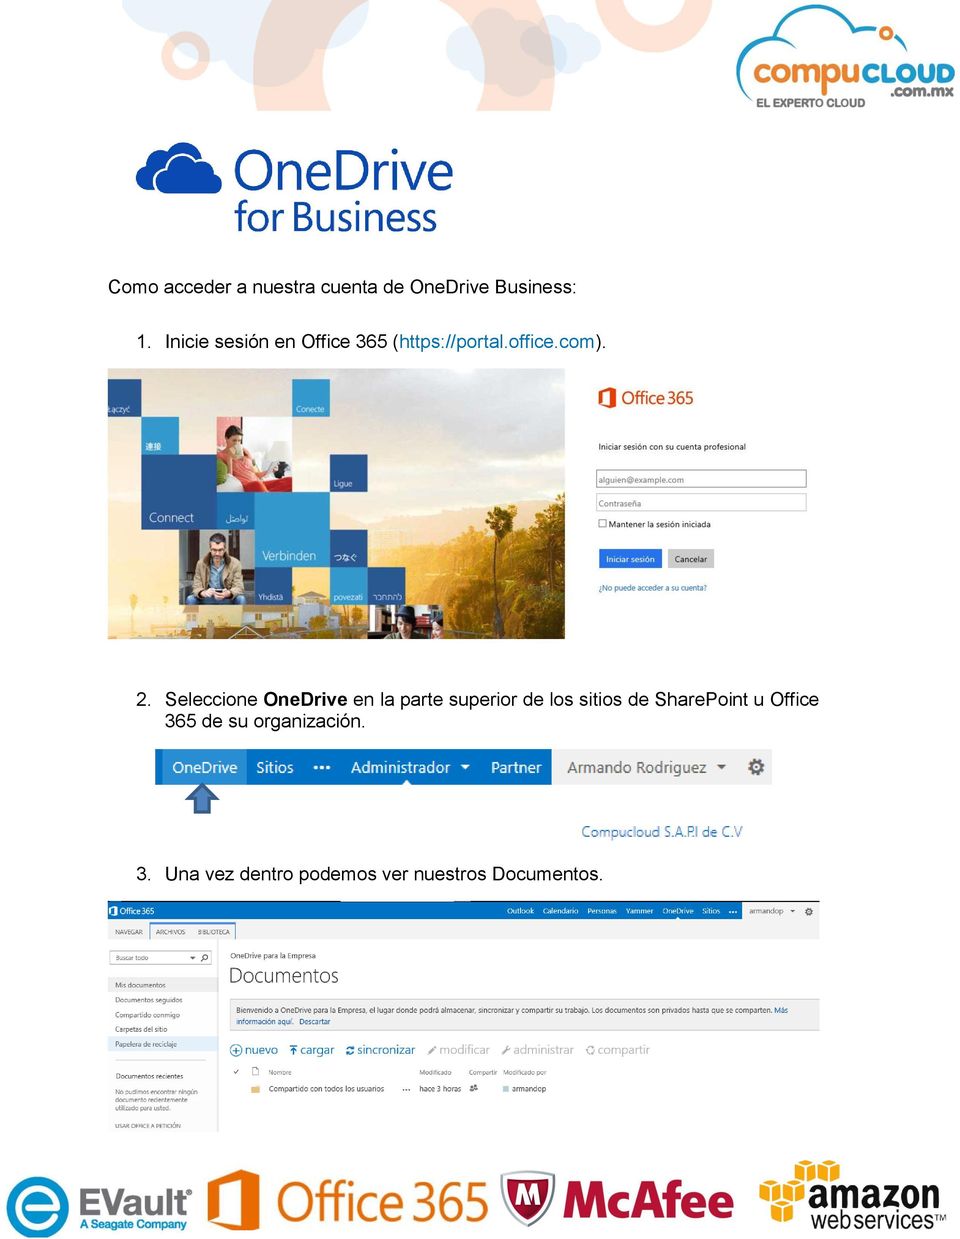 Seleccione OneDrive en la parte superior de los sitios de